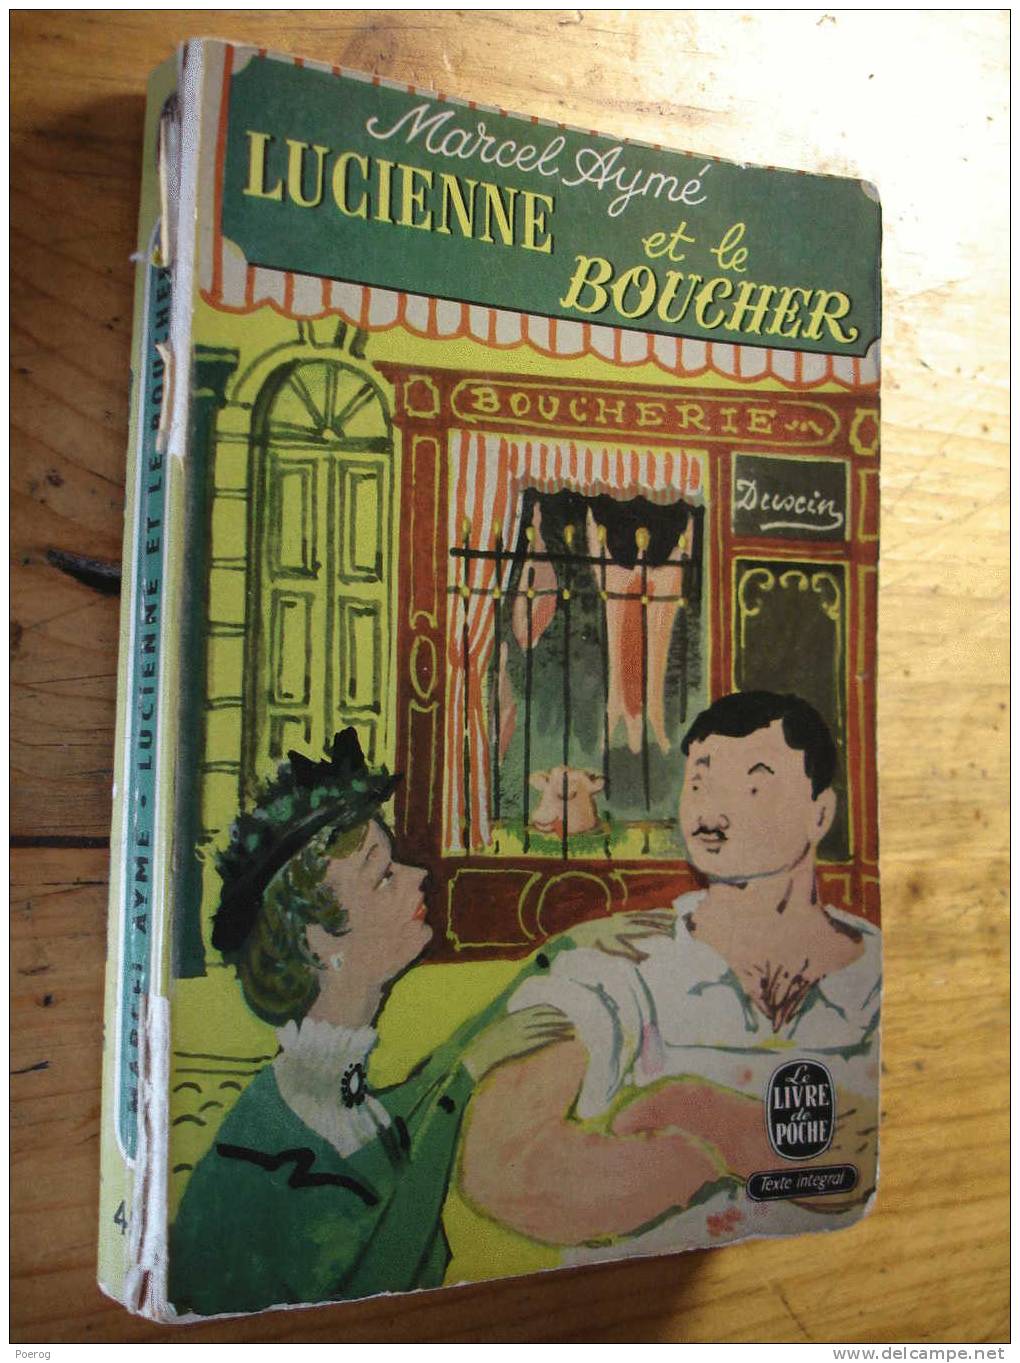 MARCEL AYME - LUCIENNE ET LE BOUCHER - LE LIVRE DE POCHE N°451- 1964 - Franse Schrijvers